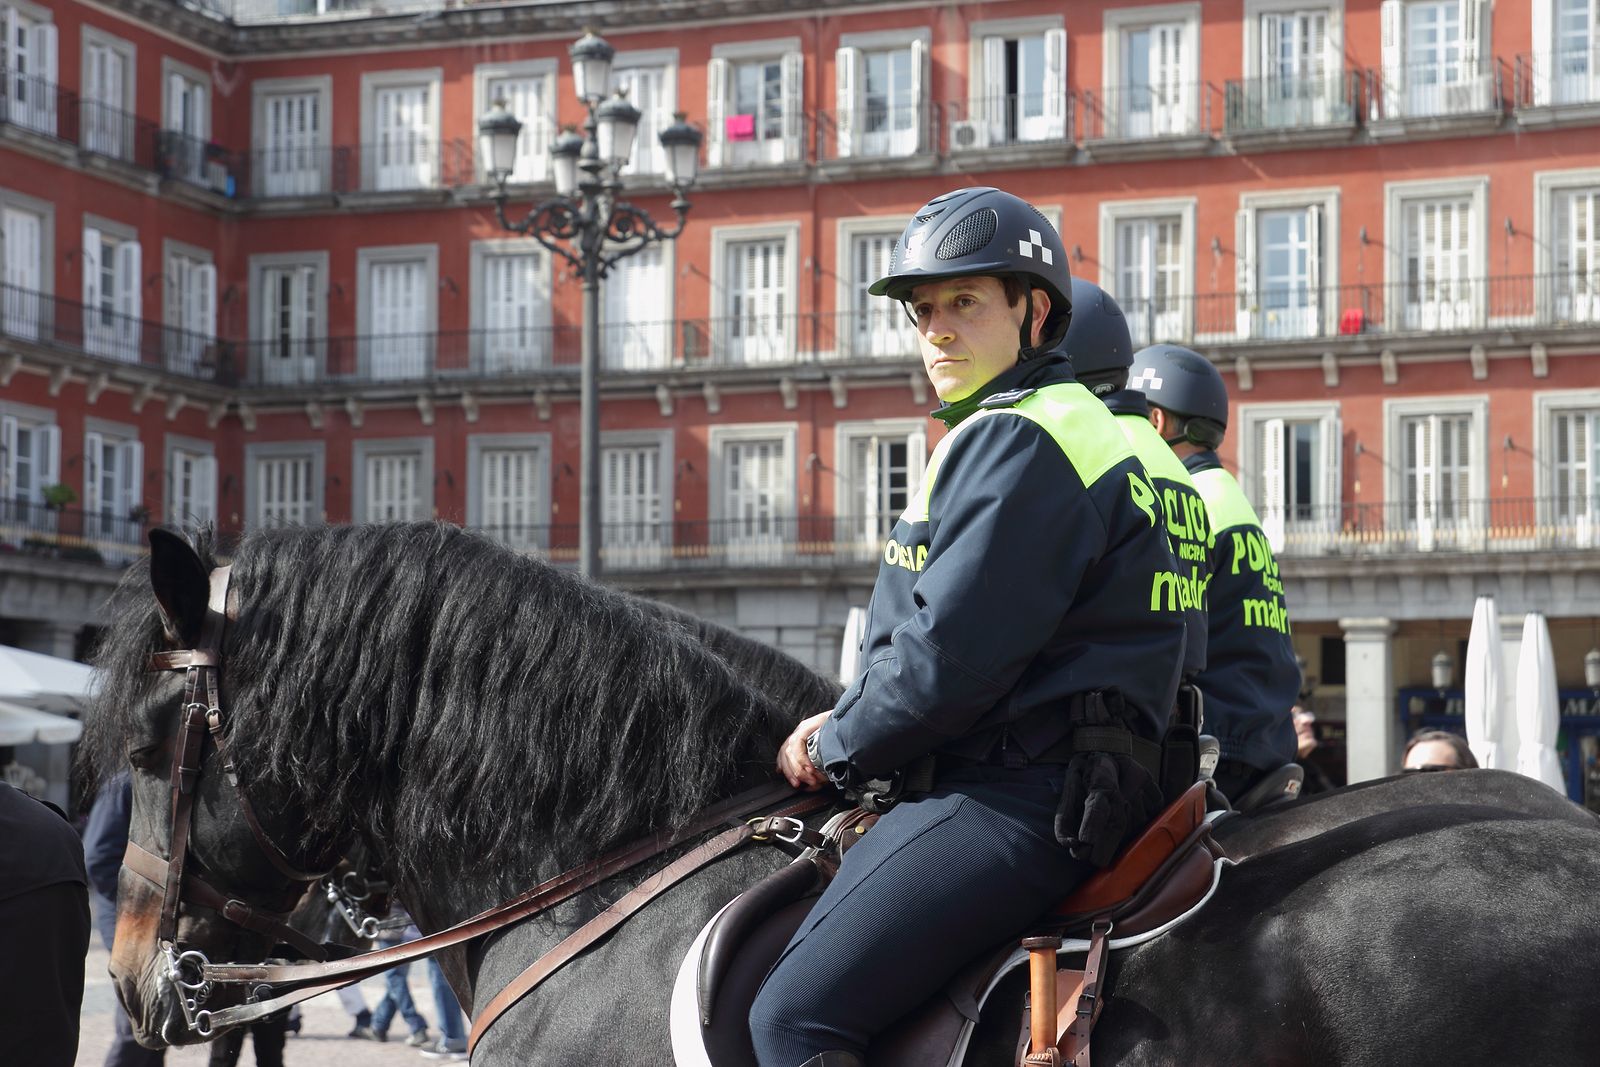 Está España entre los países más seguros del mundo: policía en la Plaza Mayor de Madrid (BigStock)